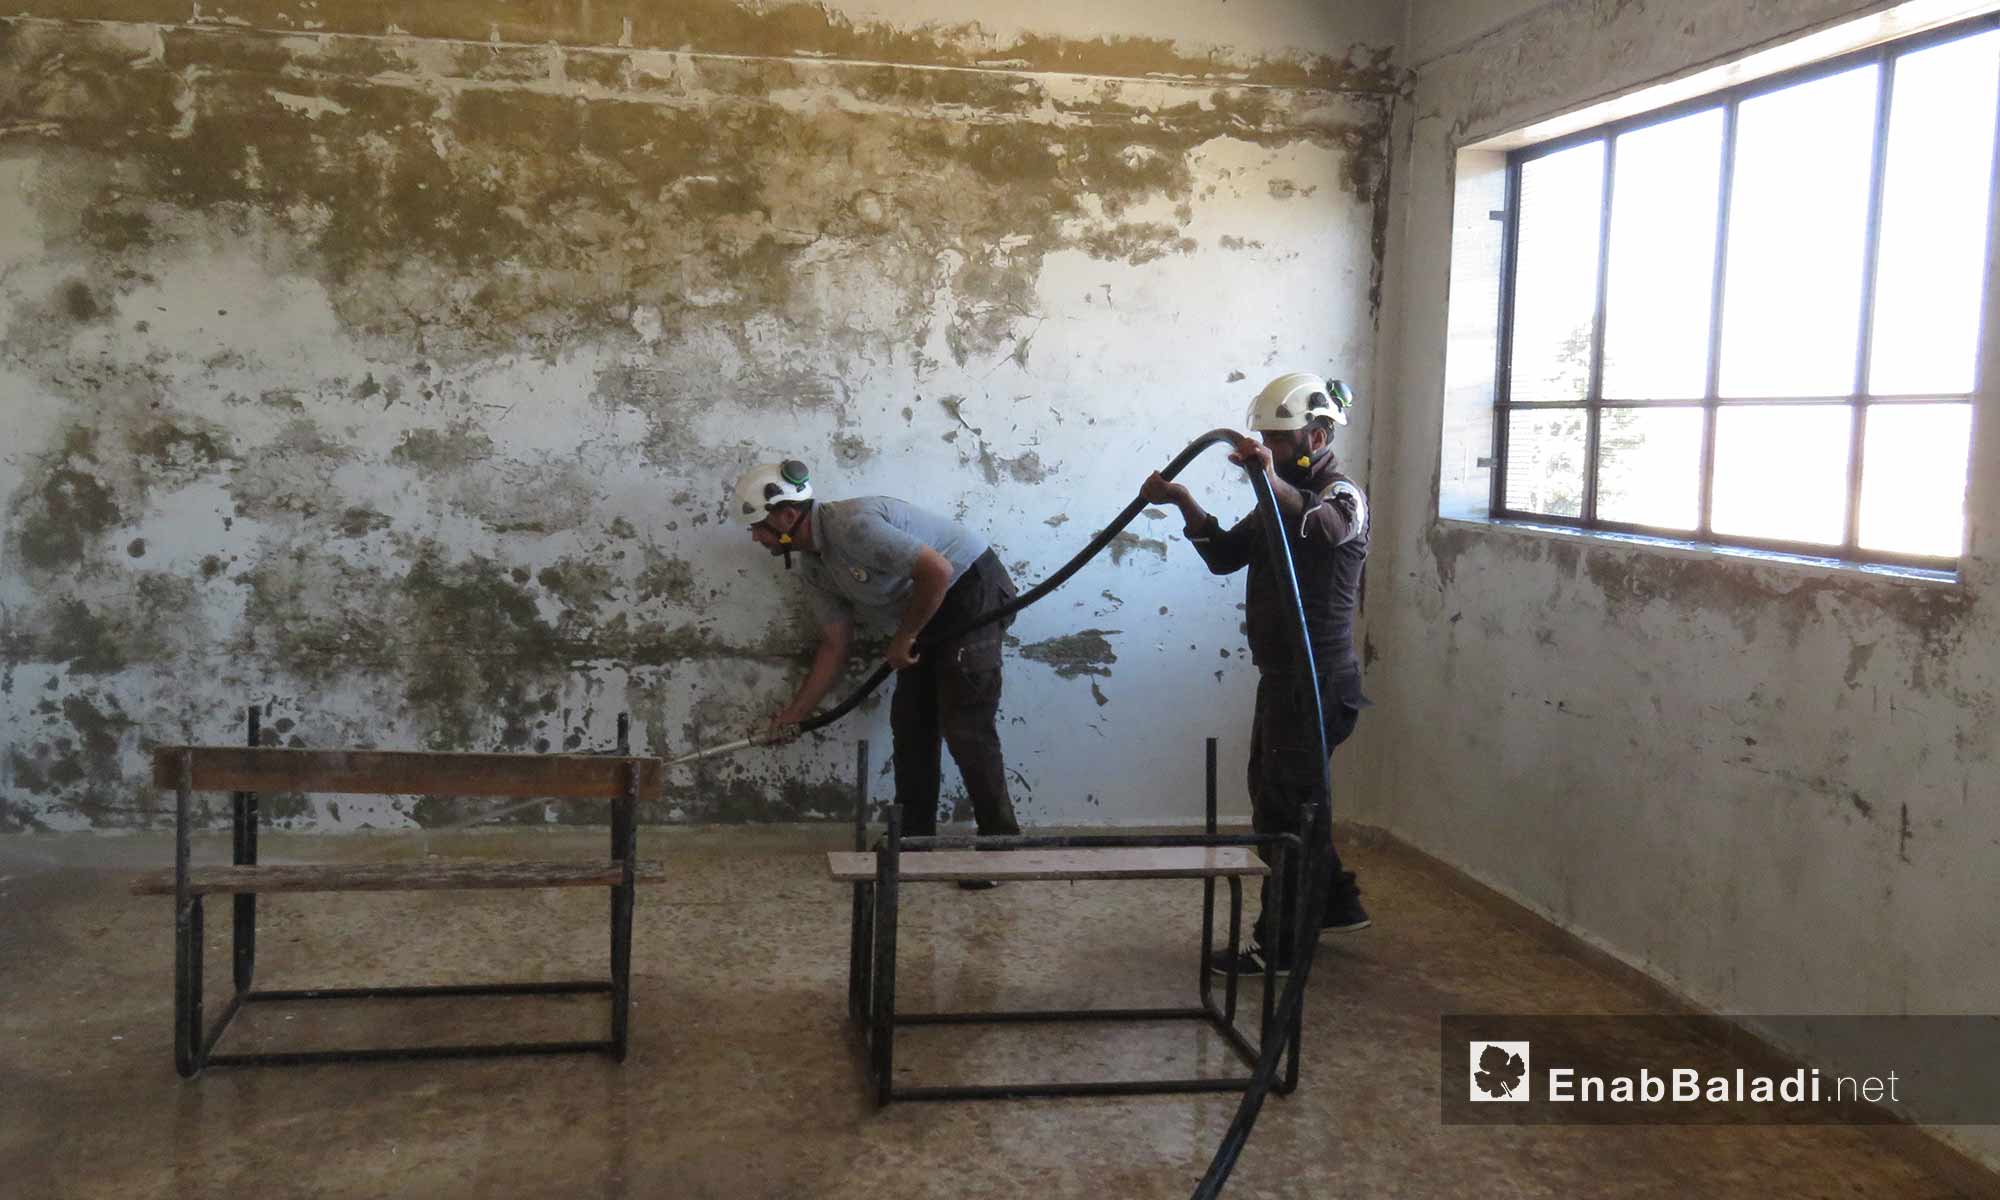 الدفاع المدني يقوم بحملة "أطفالنا أملنا" لإعادة تأهيل المدارس المتضررة وتجهيزها للعام الدراسي الجديد في ريف حماة الغربي - 11 أيلول 2017 (عنب بلدي)